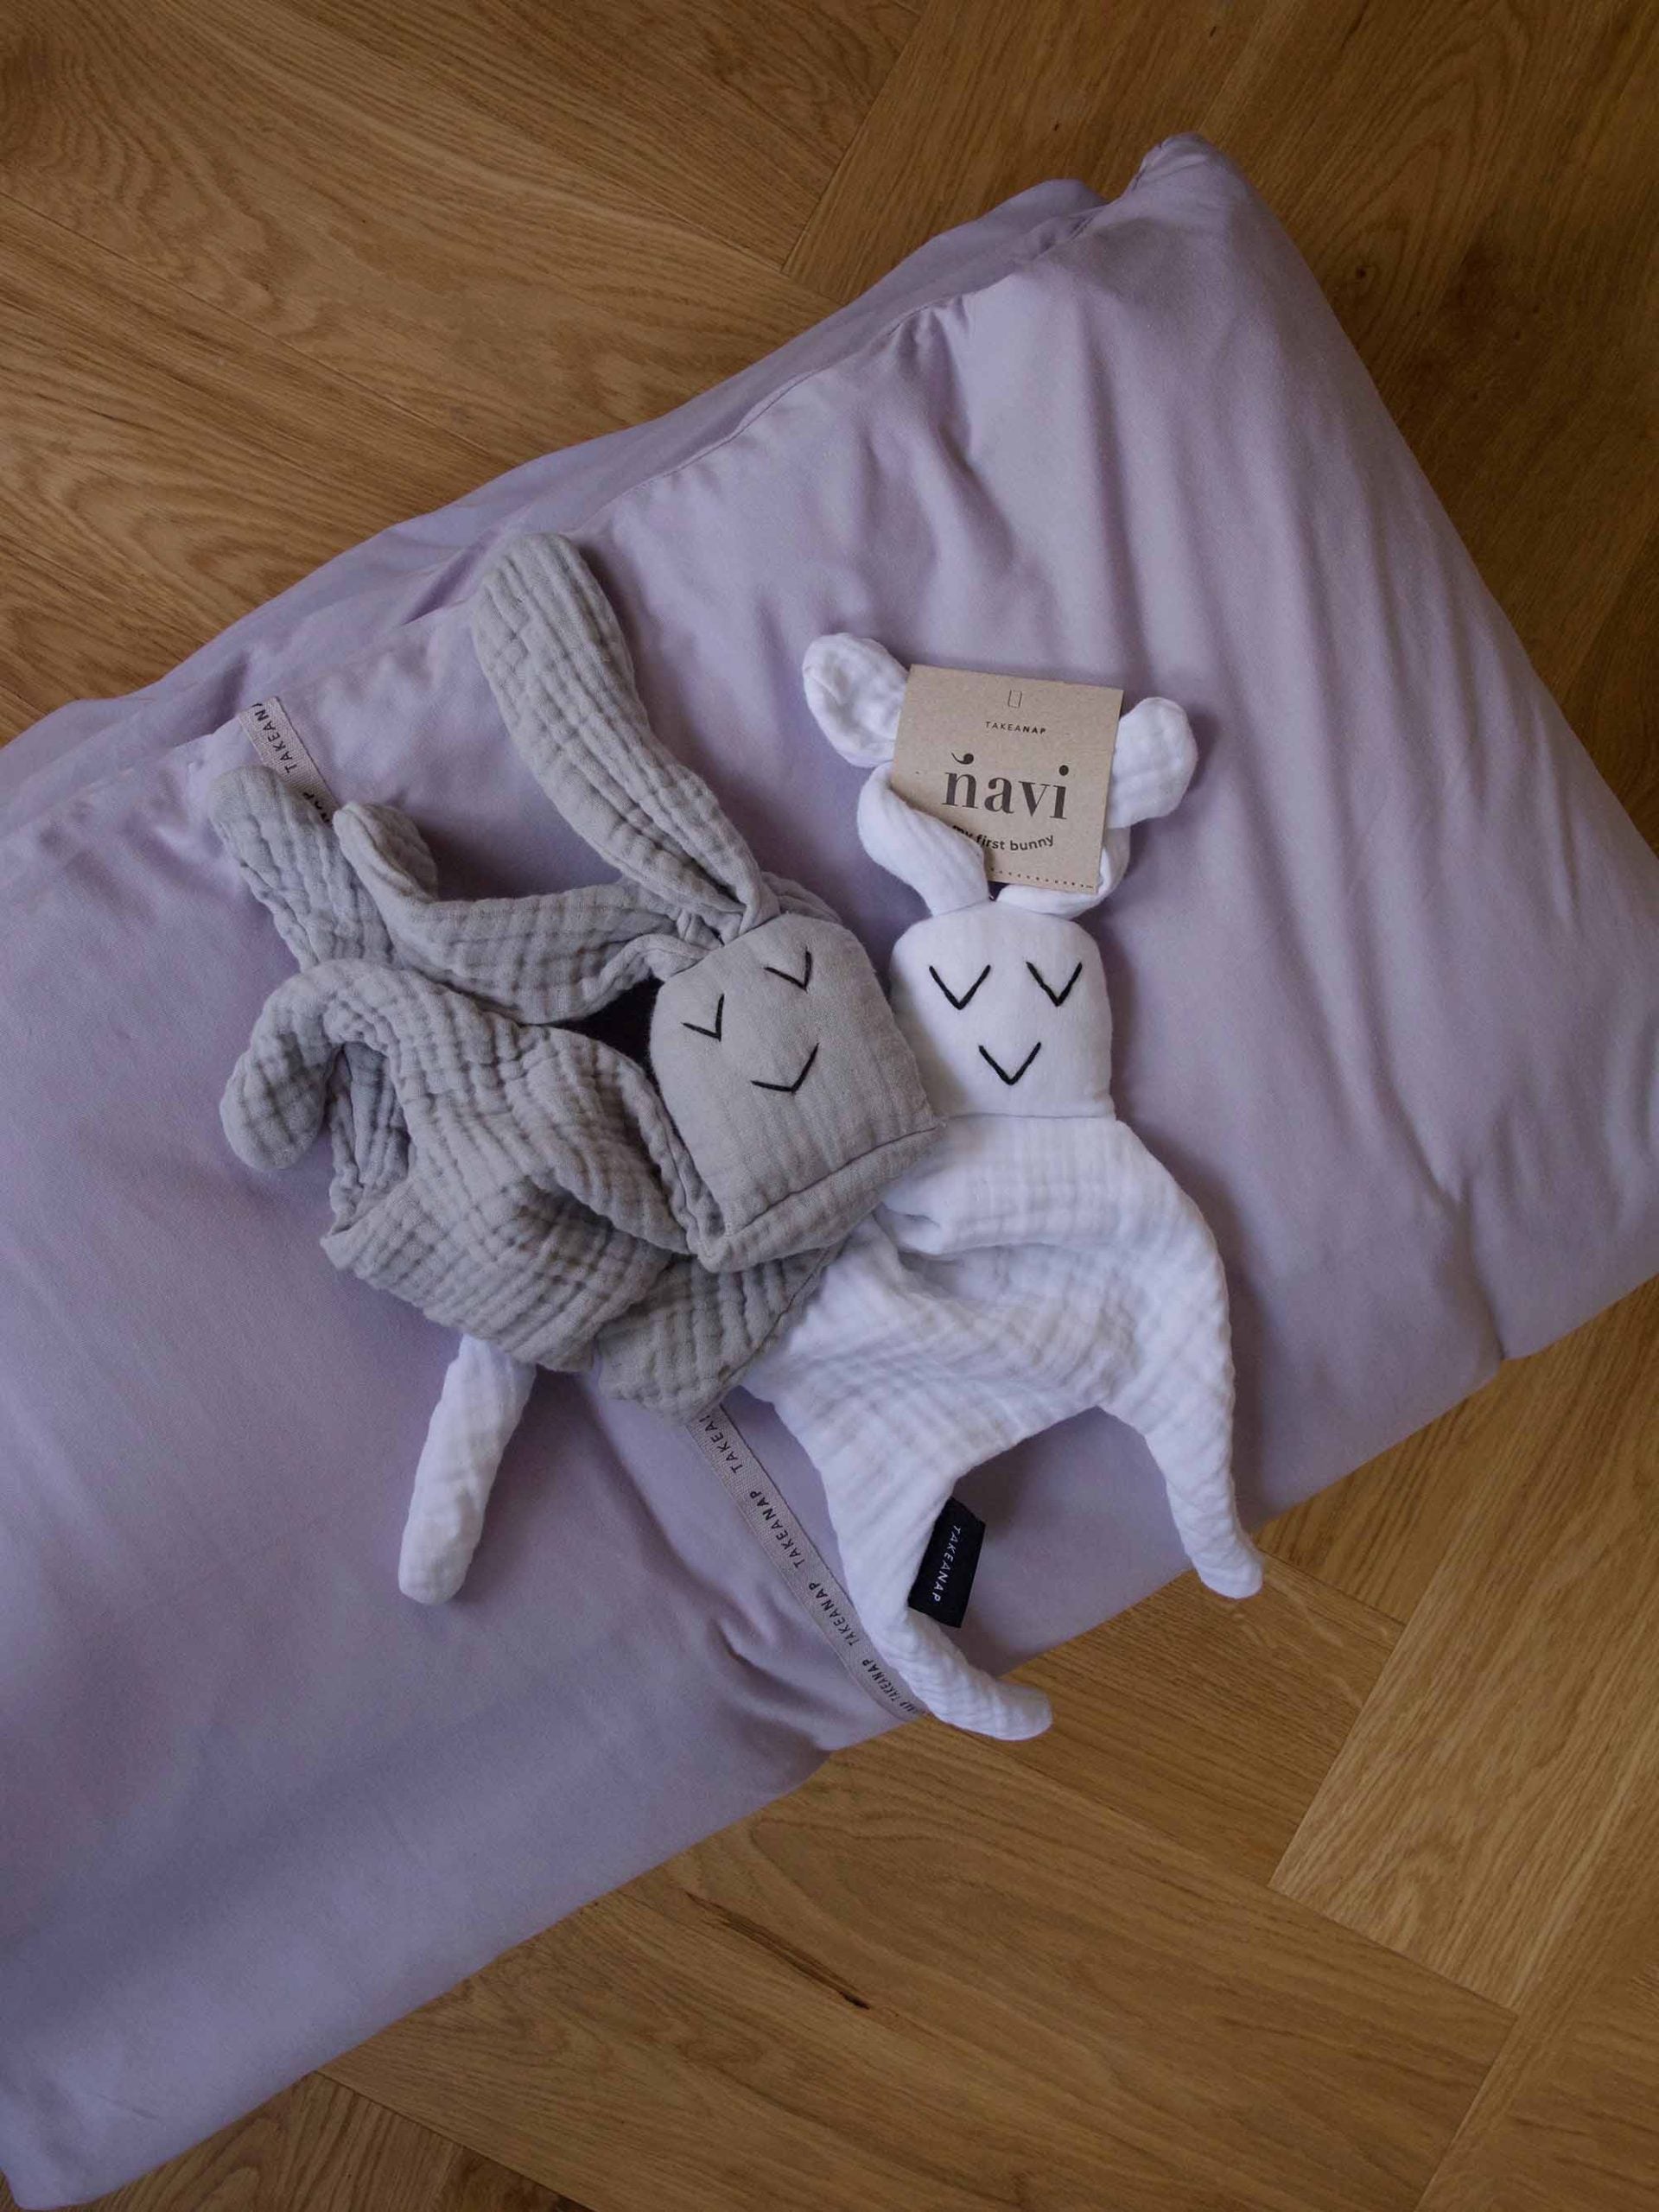 חפץ מעבר נבי ארנבי Dream לבן ואושן מונחים על כרית למיטה שהיא מונחת על רצפת פרקט